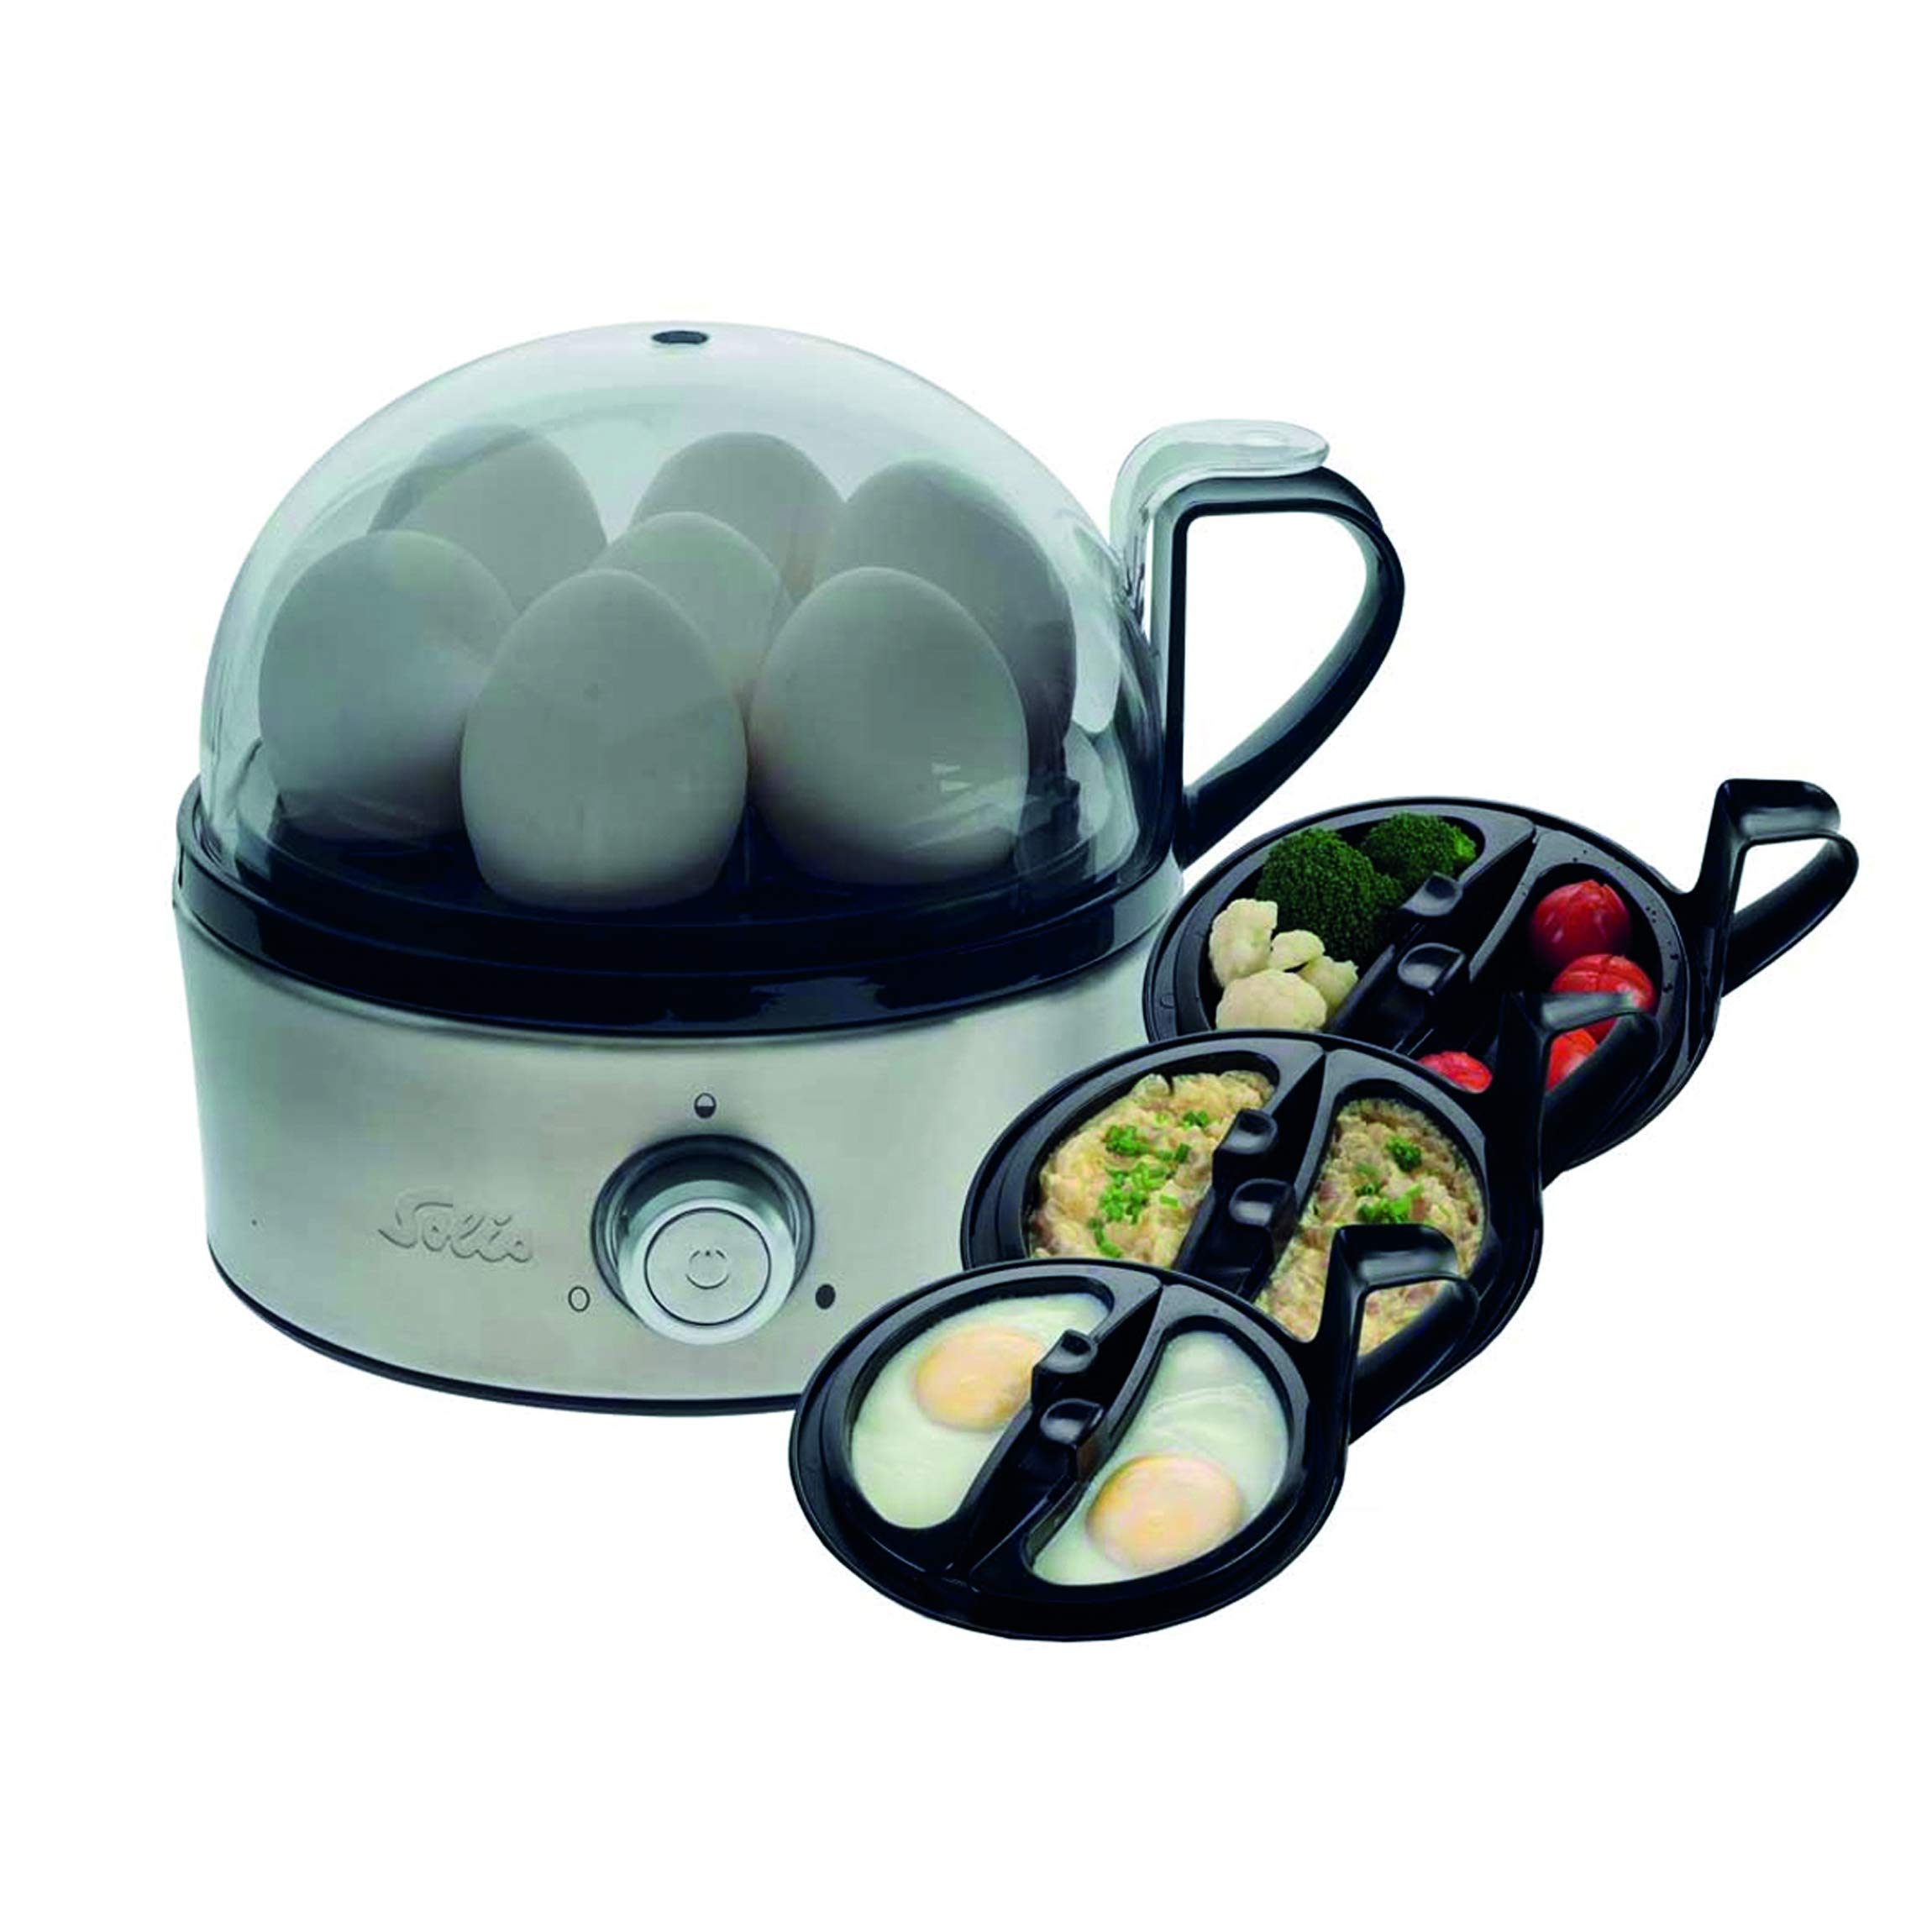 Solis Eierkocher Egg Boiler & More 827 - Für 7 Eier - Kochen und Dämpfen - Mit Härtegradeinstellung für das Ei - Eiereinsatz und 2 Schalen - Edelstahl